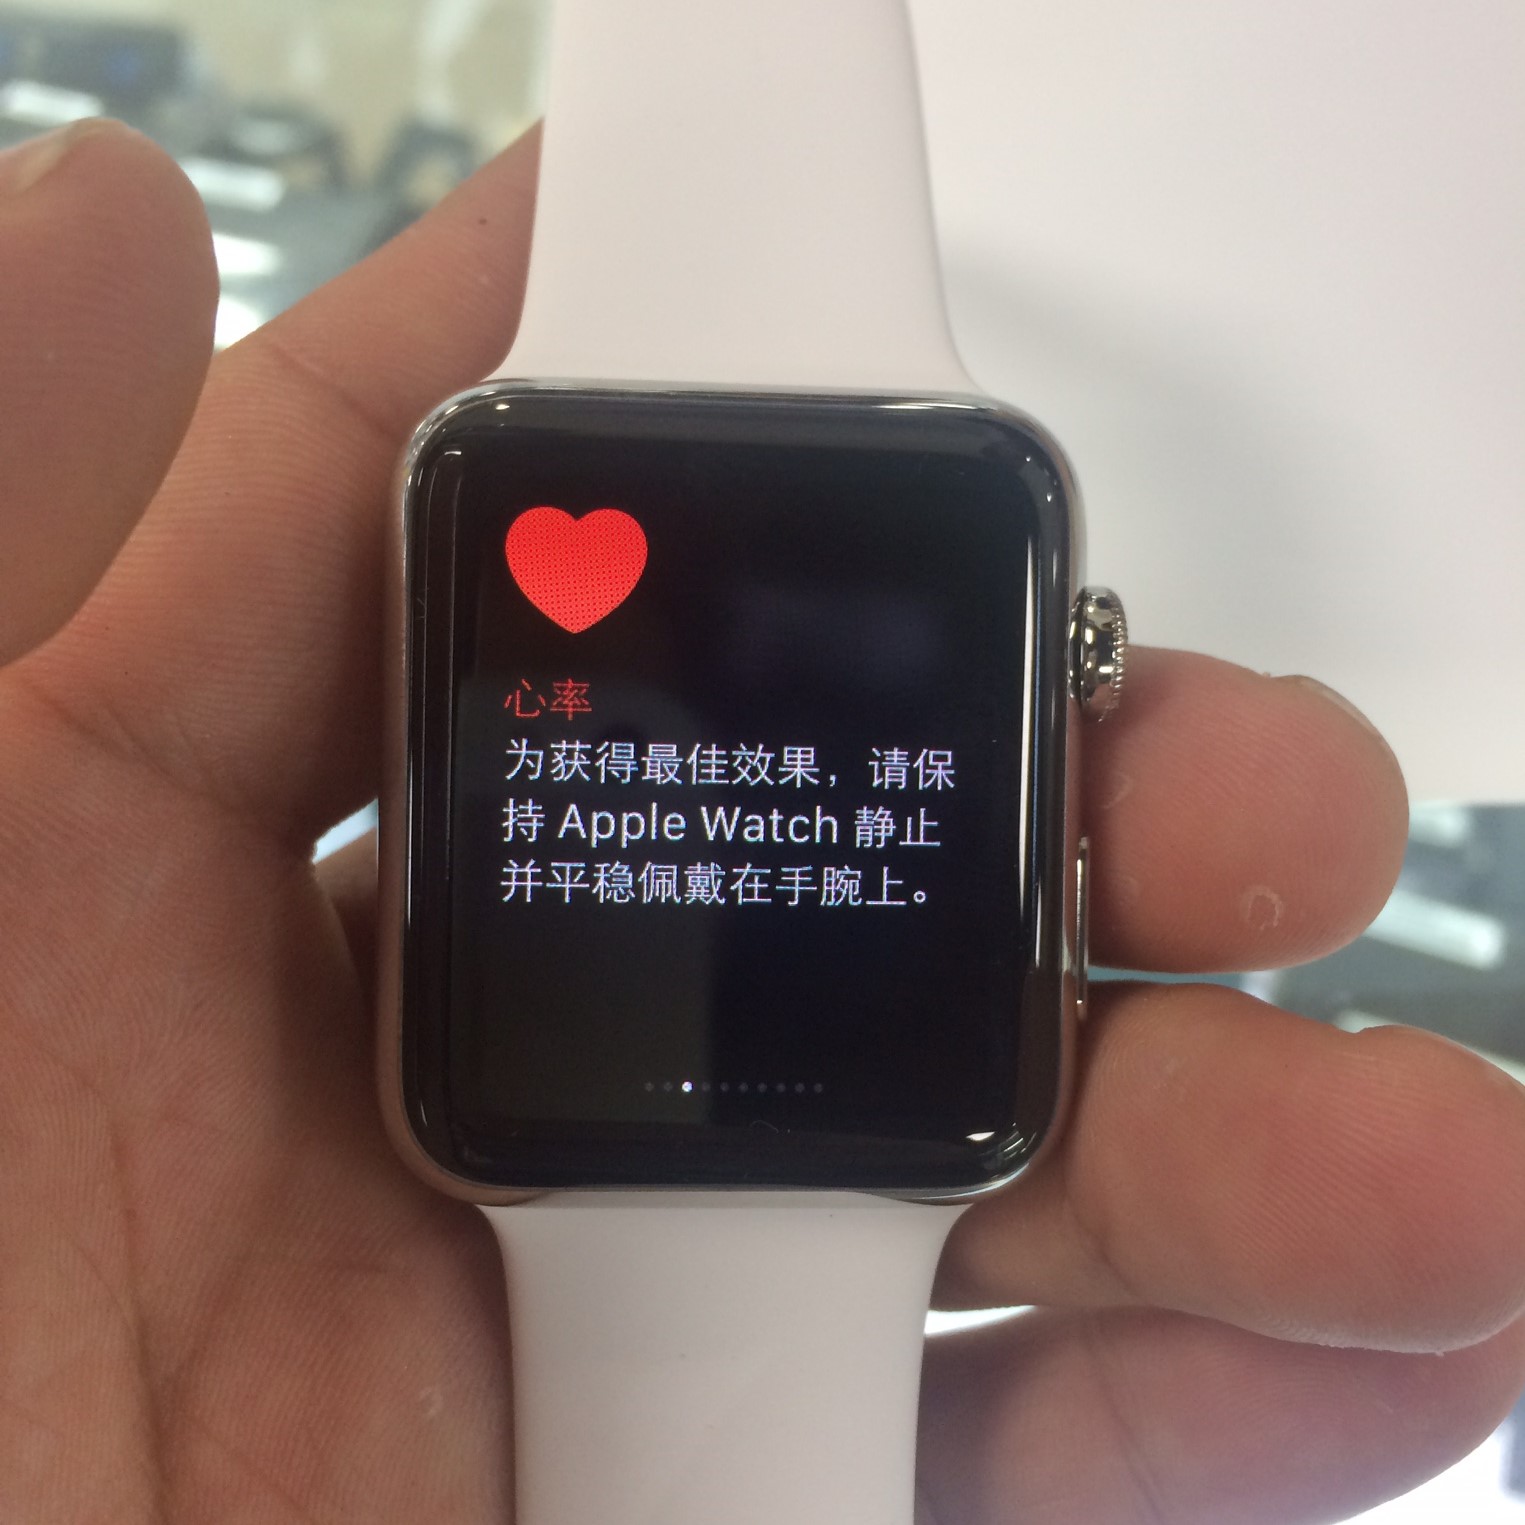 全新正品苹果手表一代apple watch 标准不锈钢运动表带蓝宝石屏